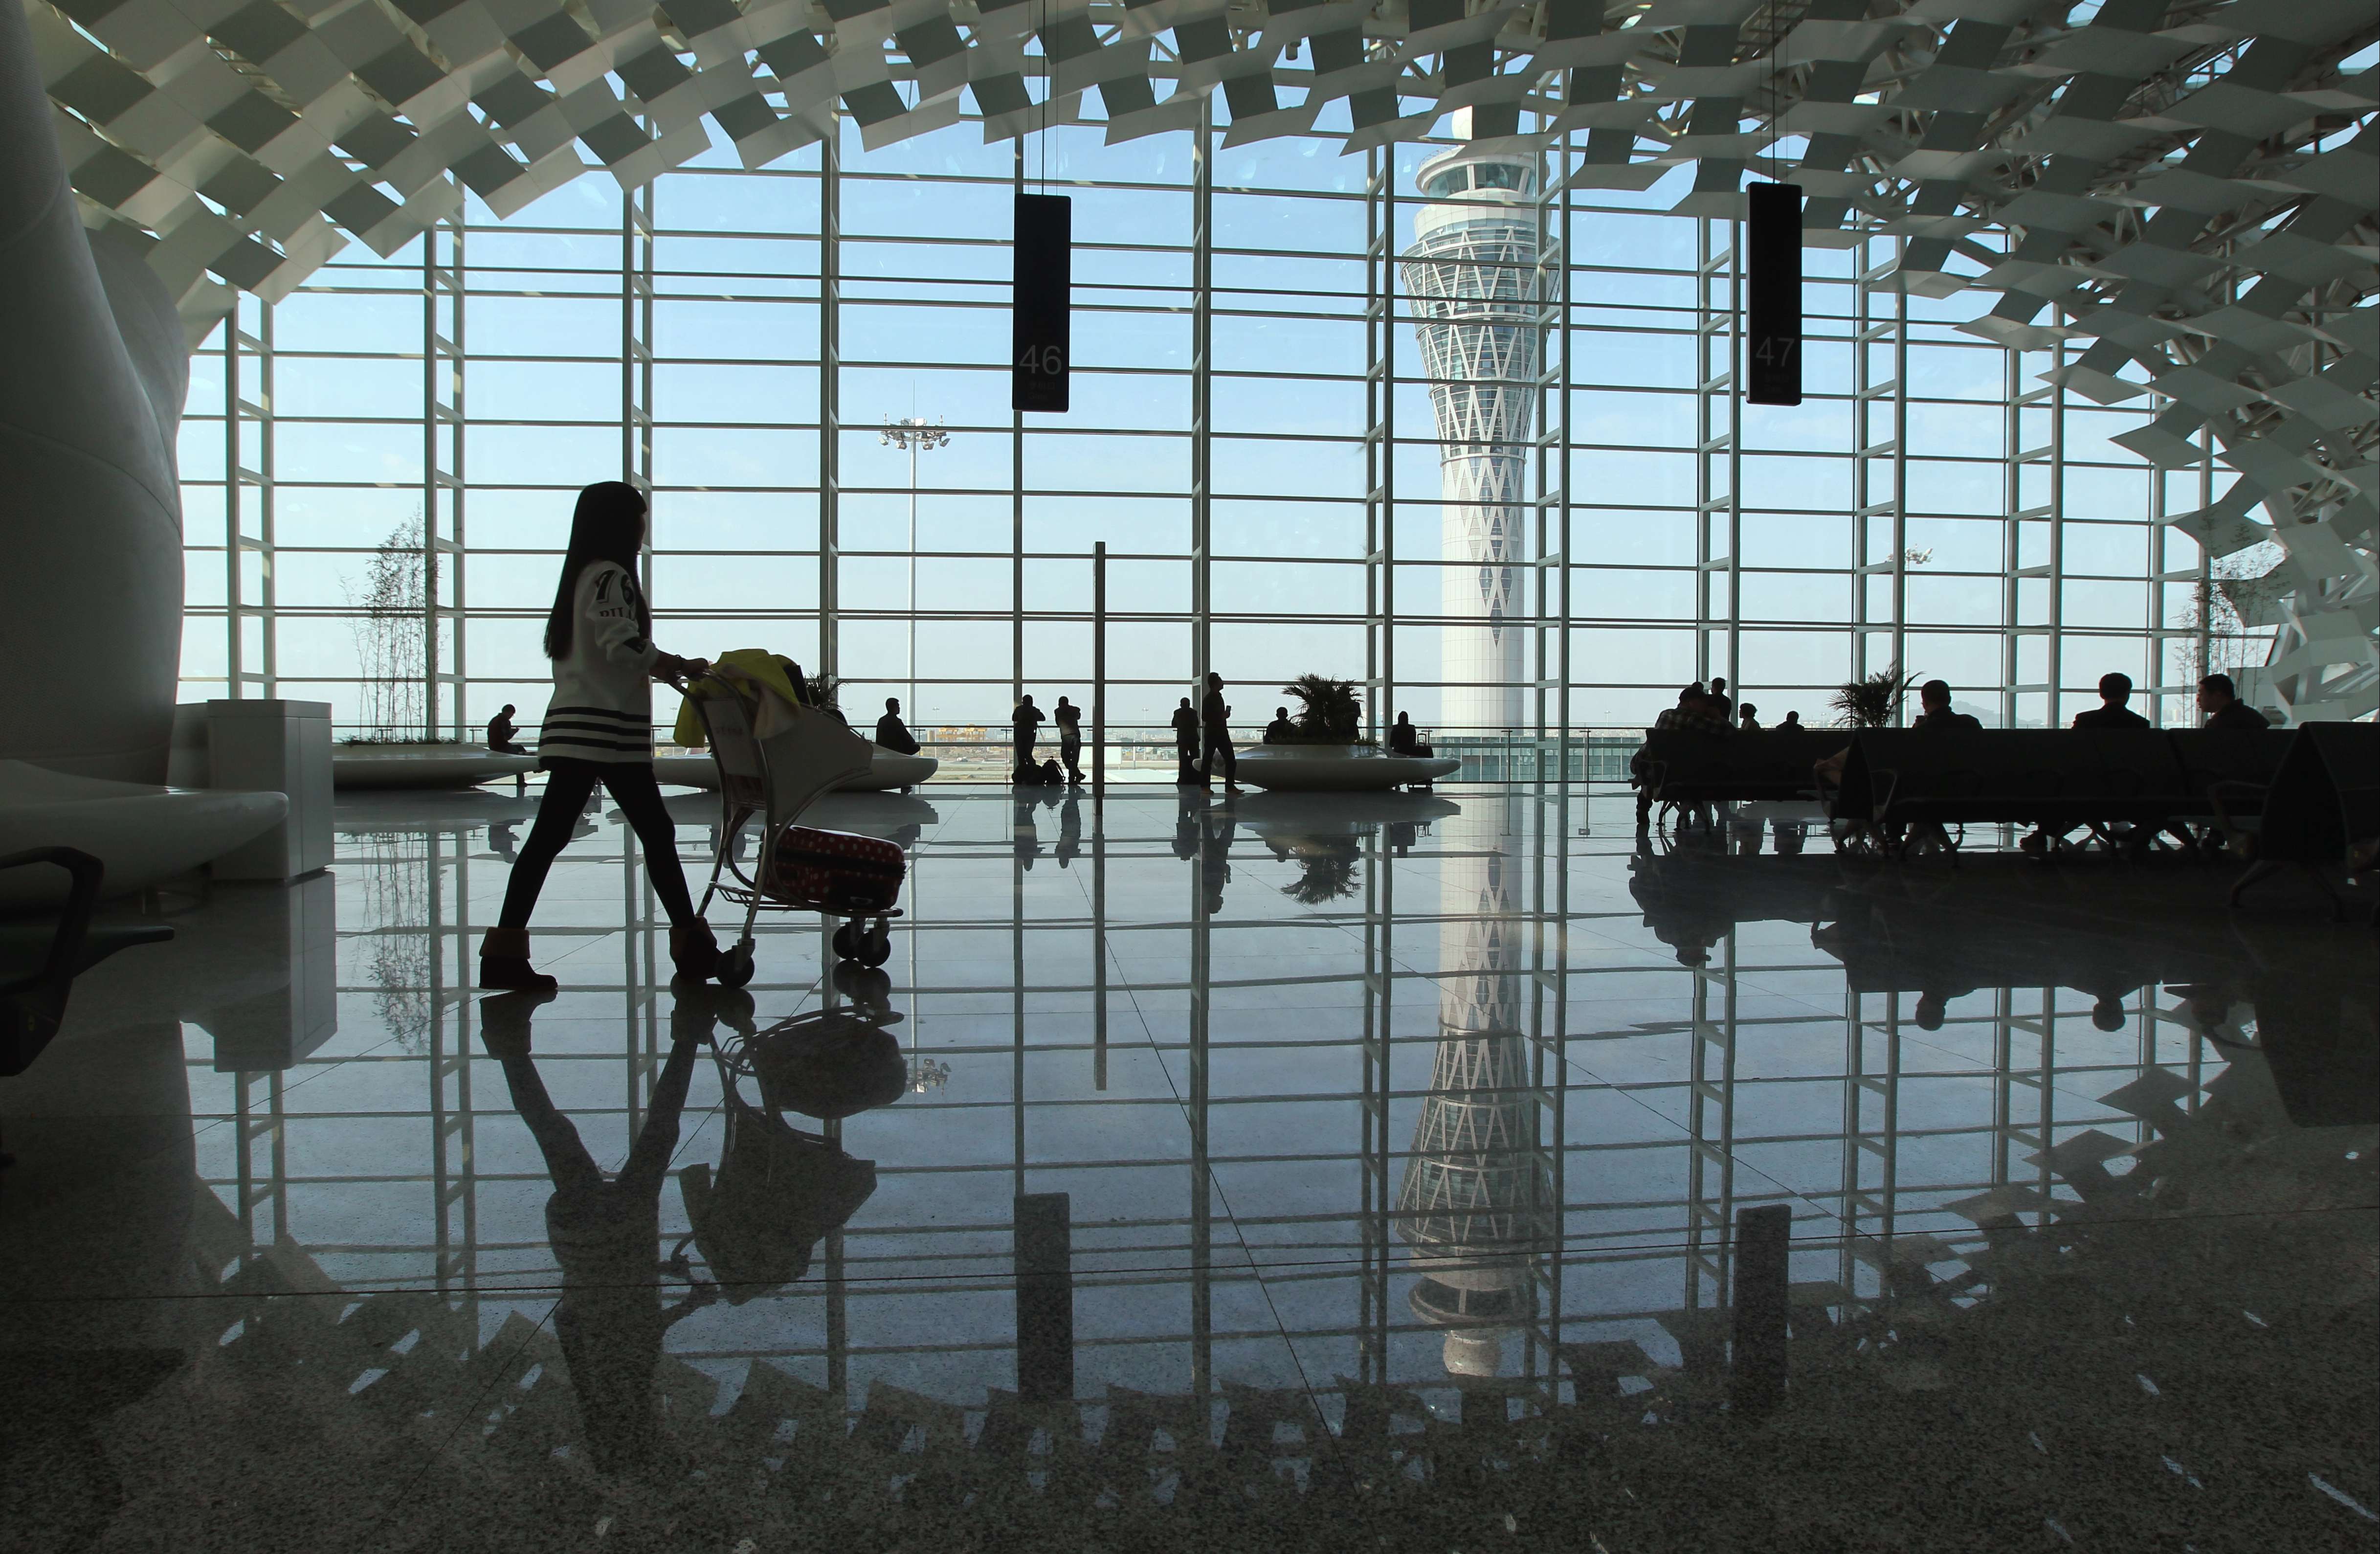 Shenzhen’s Bao'an International Airport